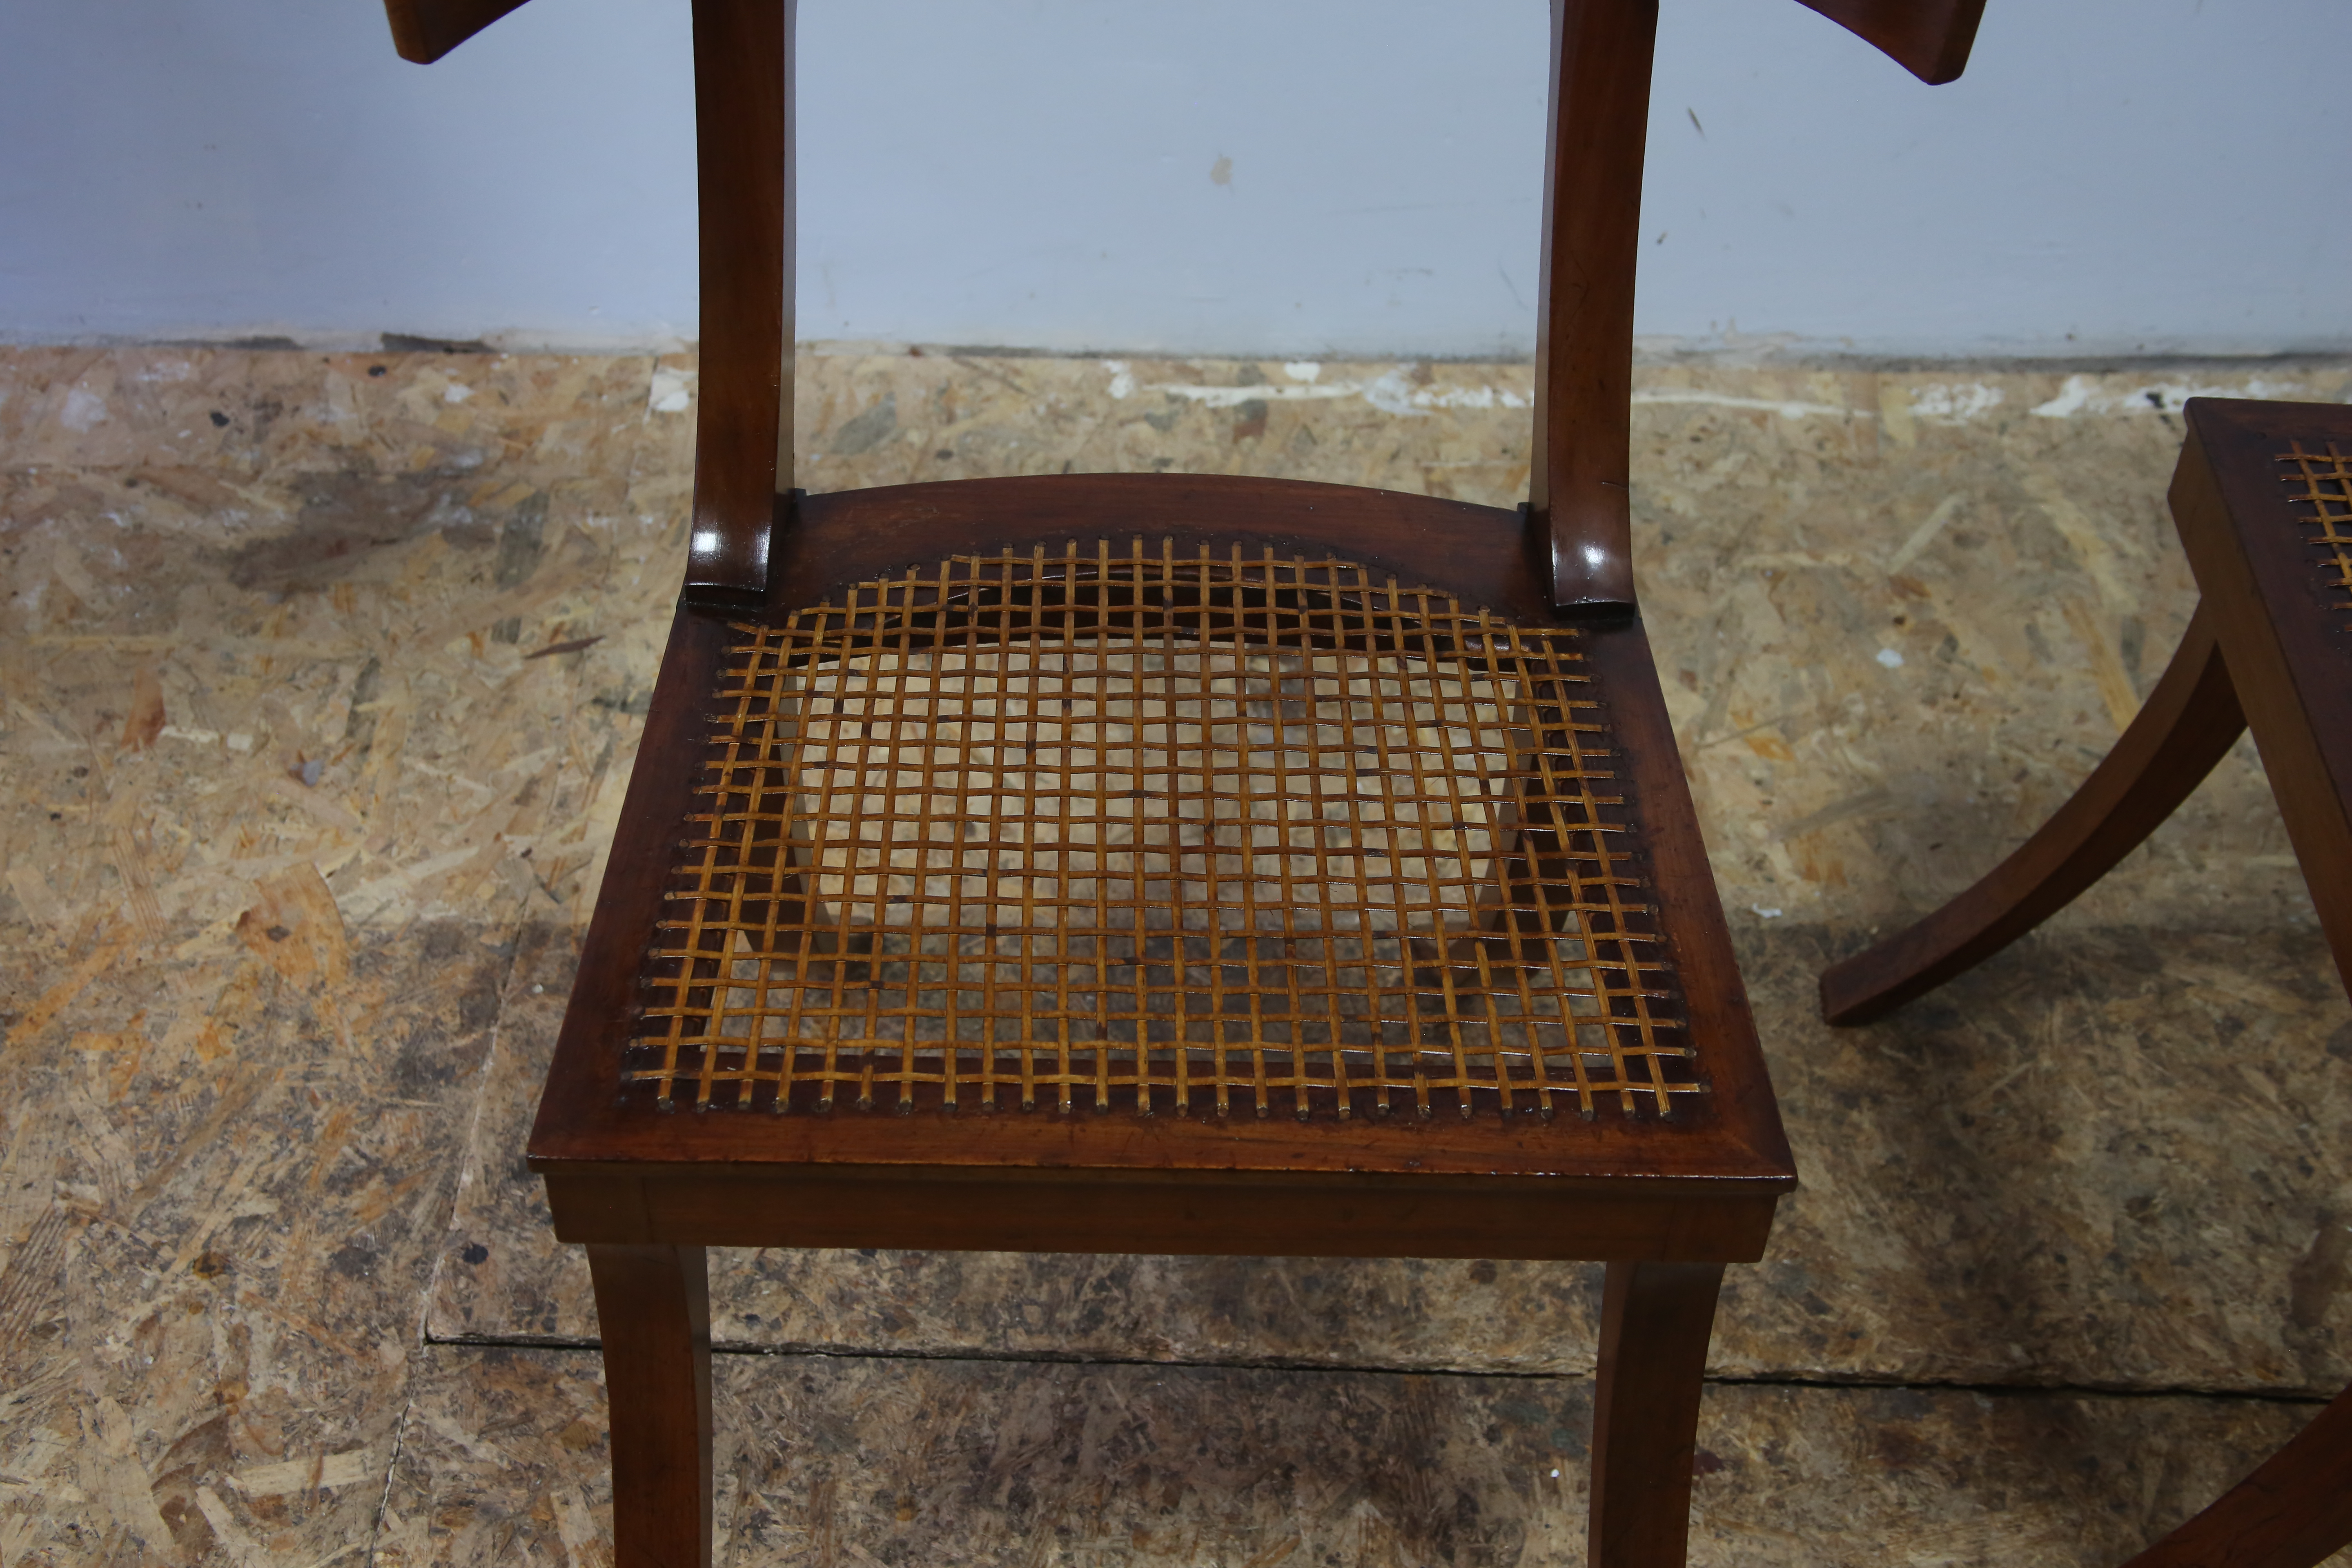 Paire de chaises klismos en acajou d'après un modèle à l'antique, XIXème siècle. Vernissage au tampon, conservation-restauration, fabrication d'un cannage sur-mesure traditionnelle